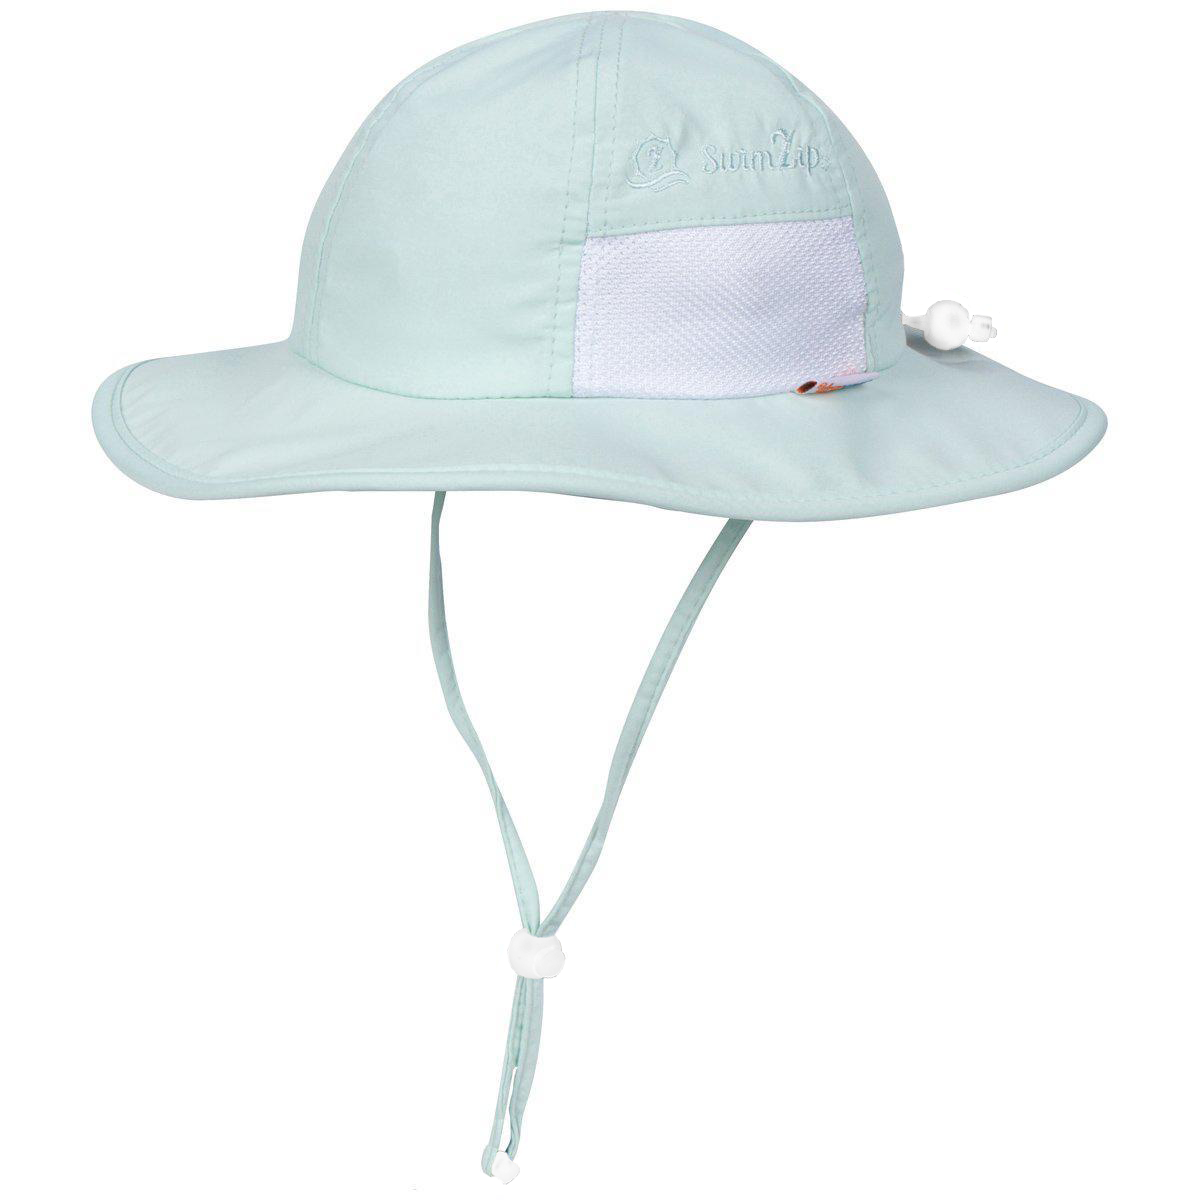 Kids Sun Hats, Wide Brim Hats, Sun Protection Beach Hat